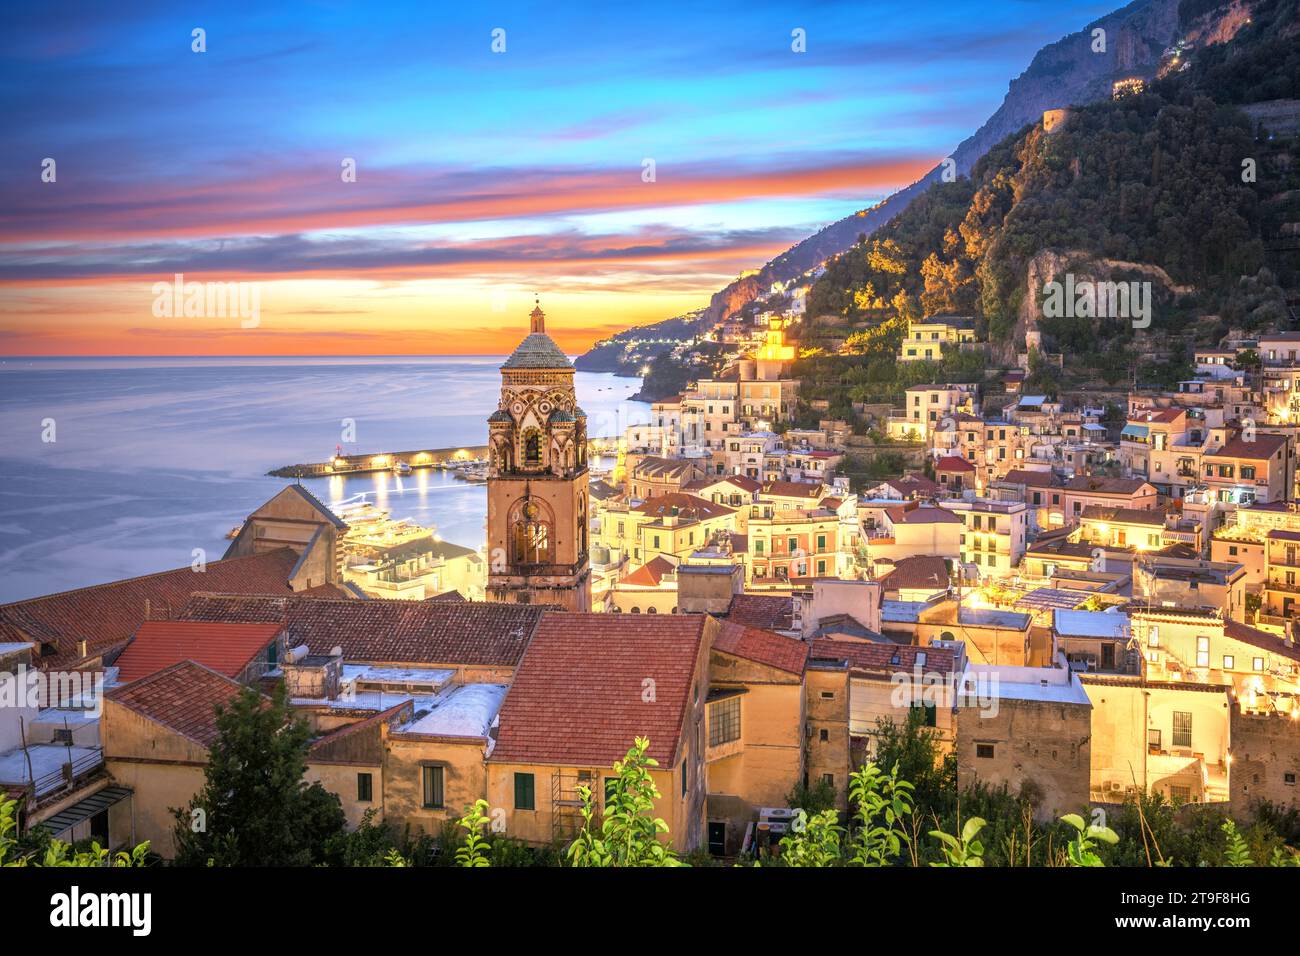 Amalfi, Italien an der Mittelmeerküste kurz nach einem wunderschönen Sonnenuntergang. Stockfoto